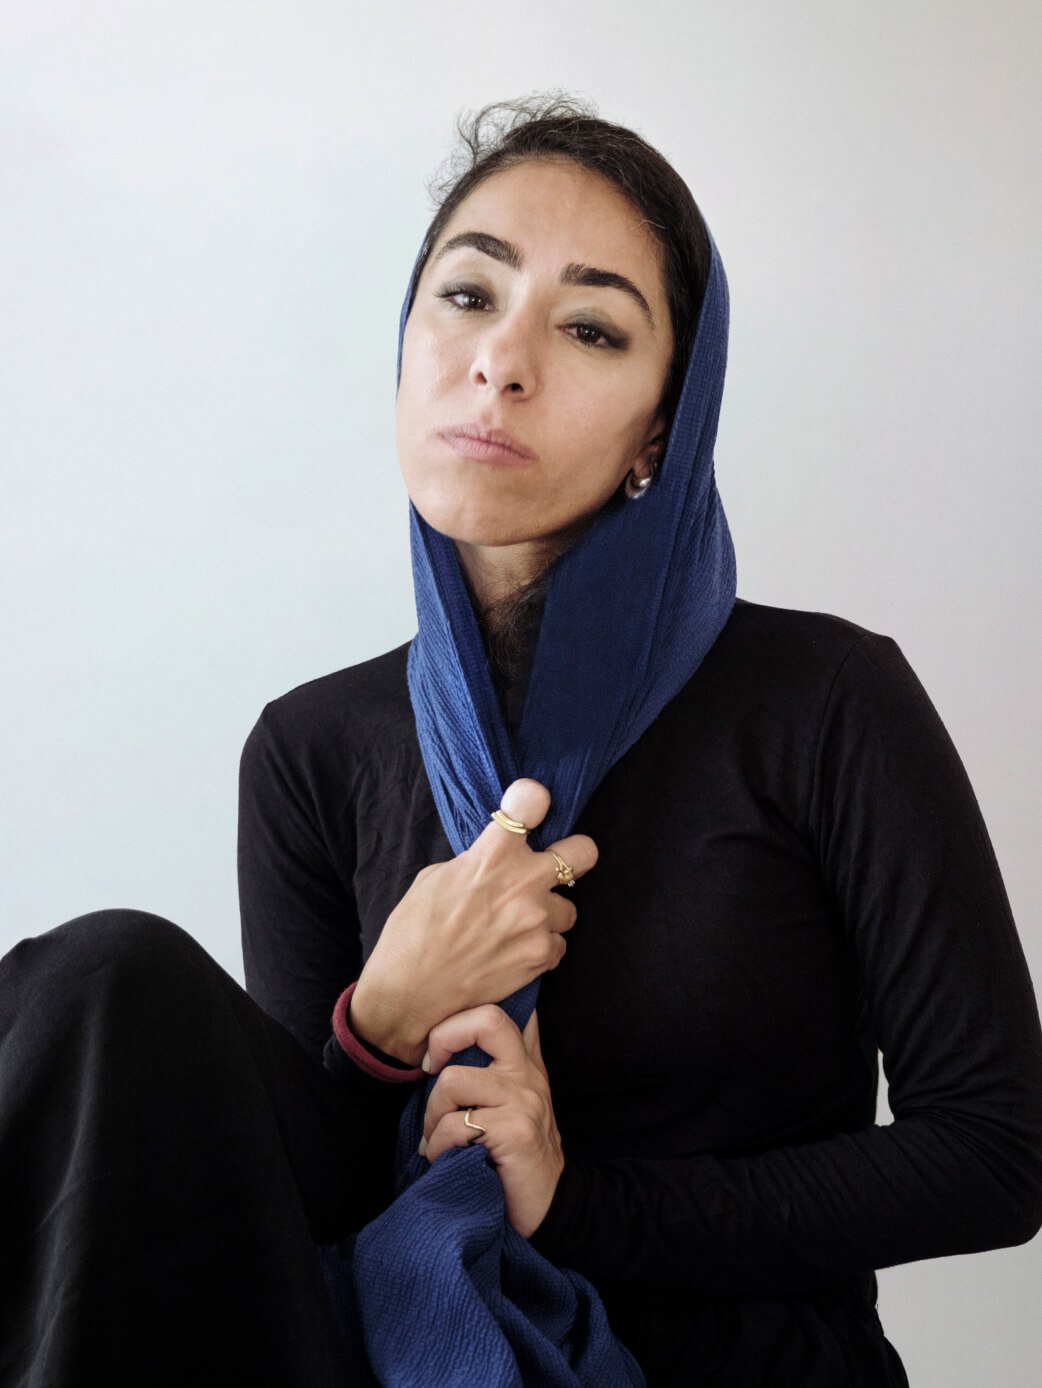 Testa e busto di Sabiha Çimen, che indossa il velo, su uno sfondo neutro.